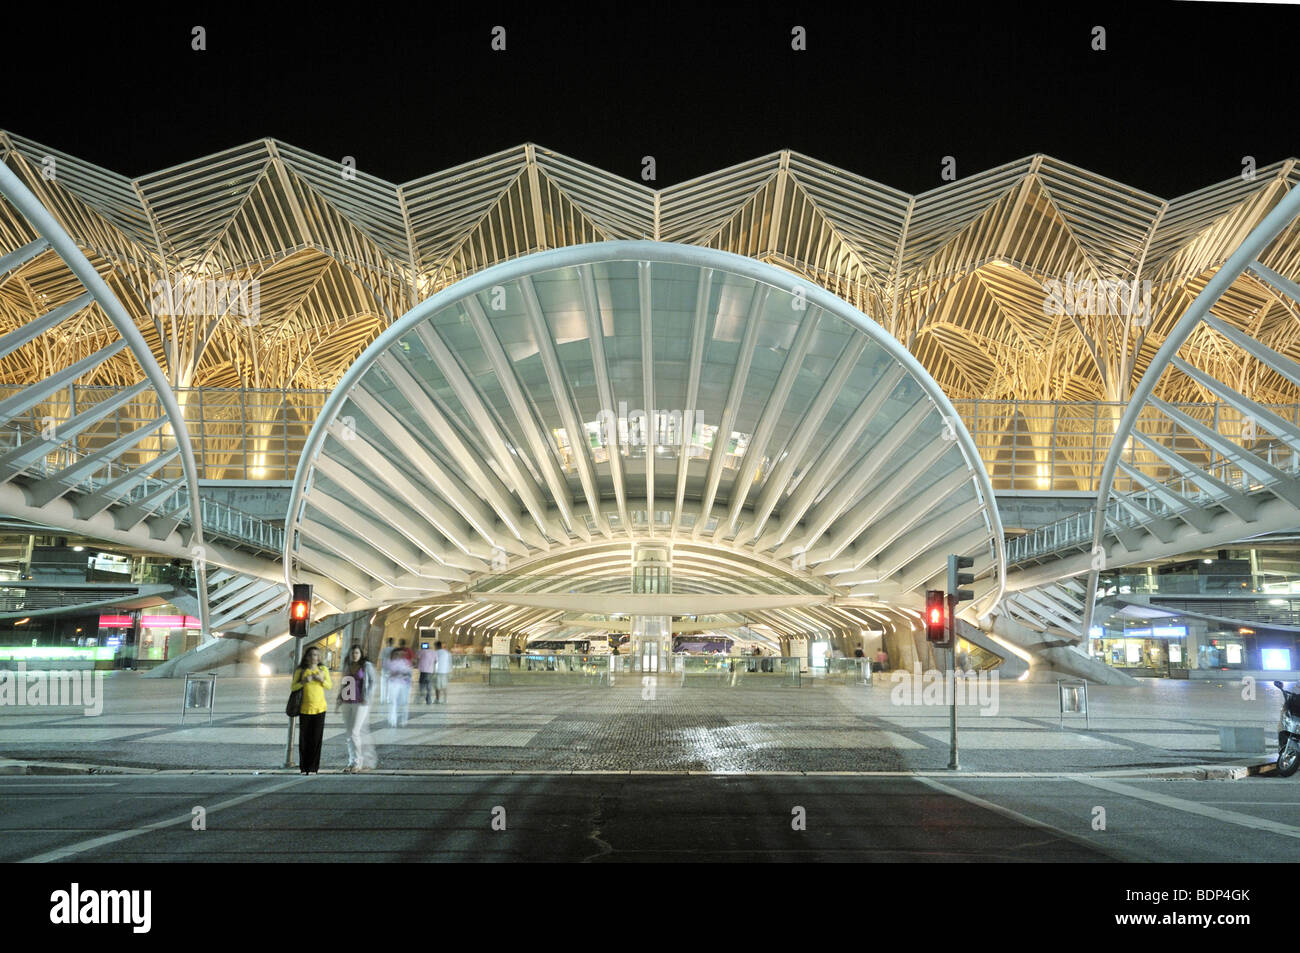 Gare do Oriente stazione ferroviaria di notte, l'architetto Santiago Calatrava, sui terreni del Parque das Nacoes park, sito del Foto Stock